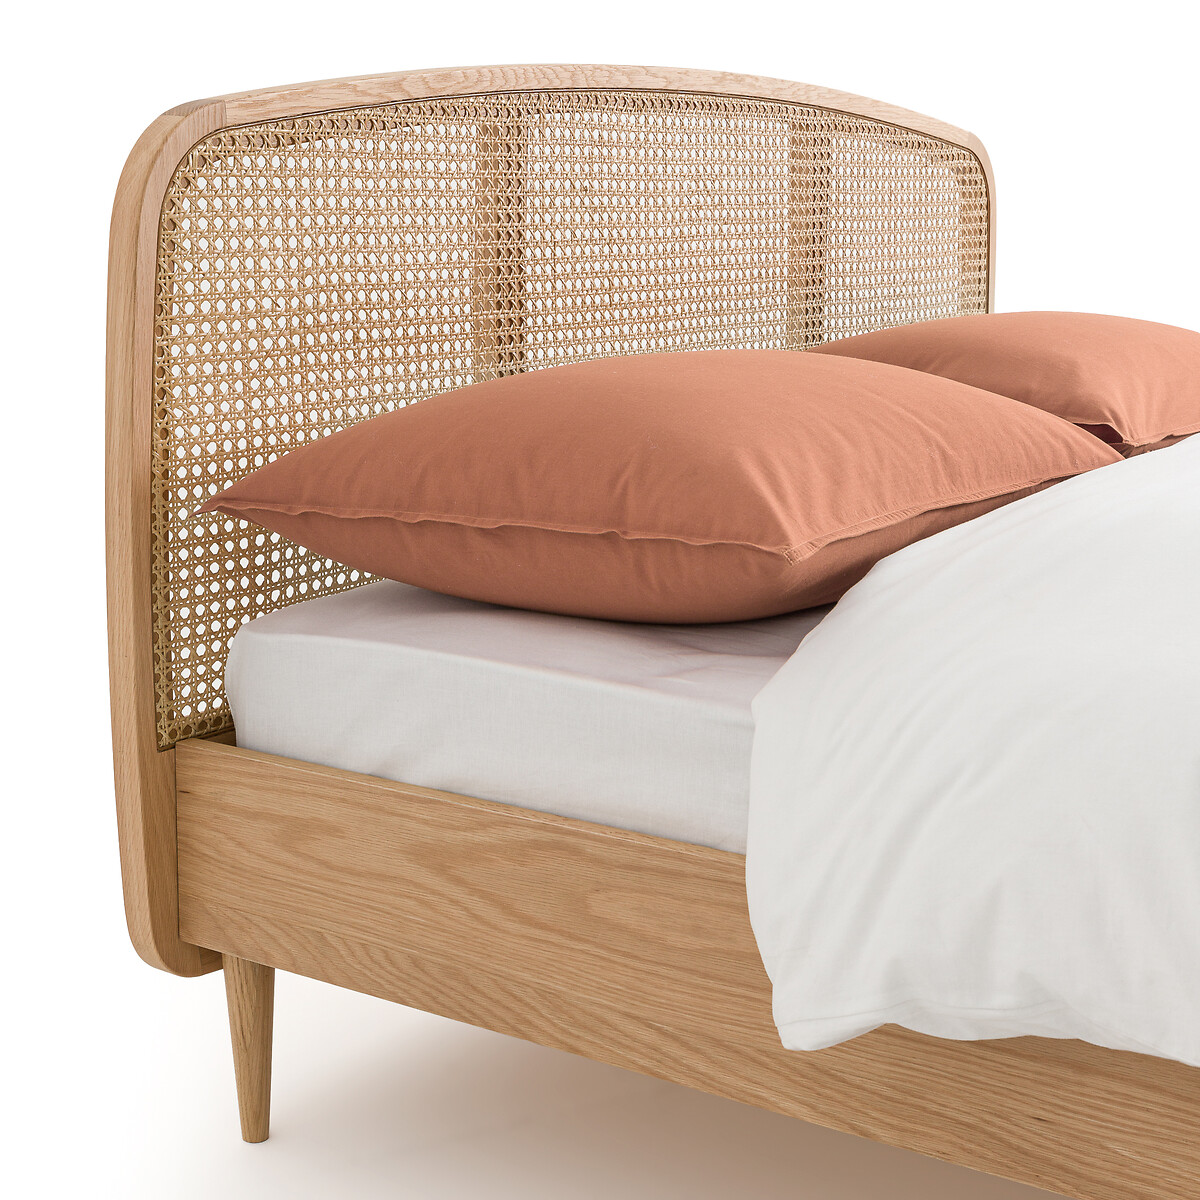 Кровать из дуба и плетеного материала с реечным кроватным основанием Buisseau  140 x 190 см каштановый LaRedoute, размер 140 x 190 см - фото 5